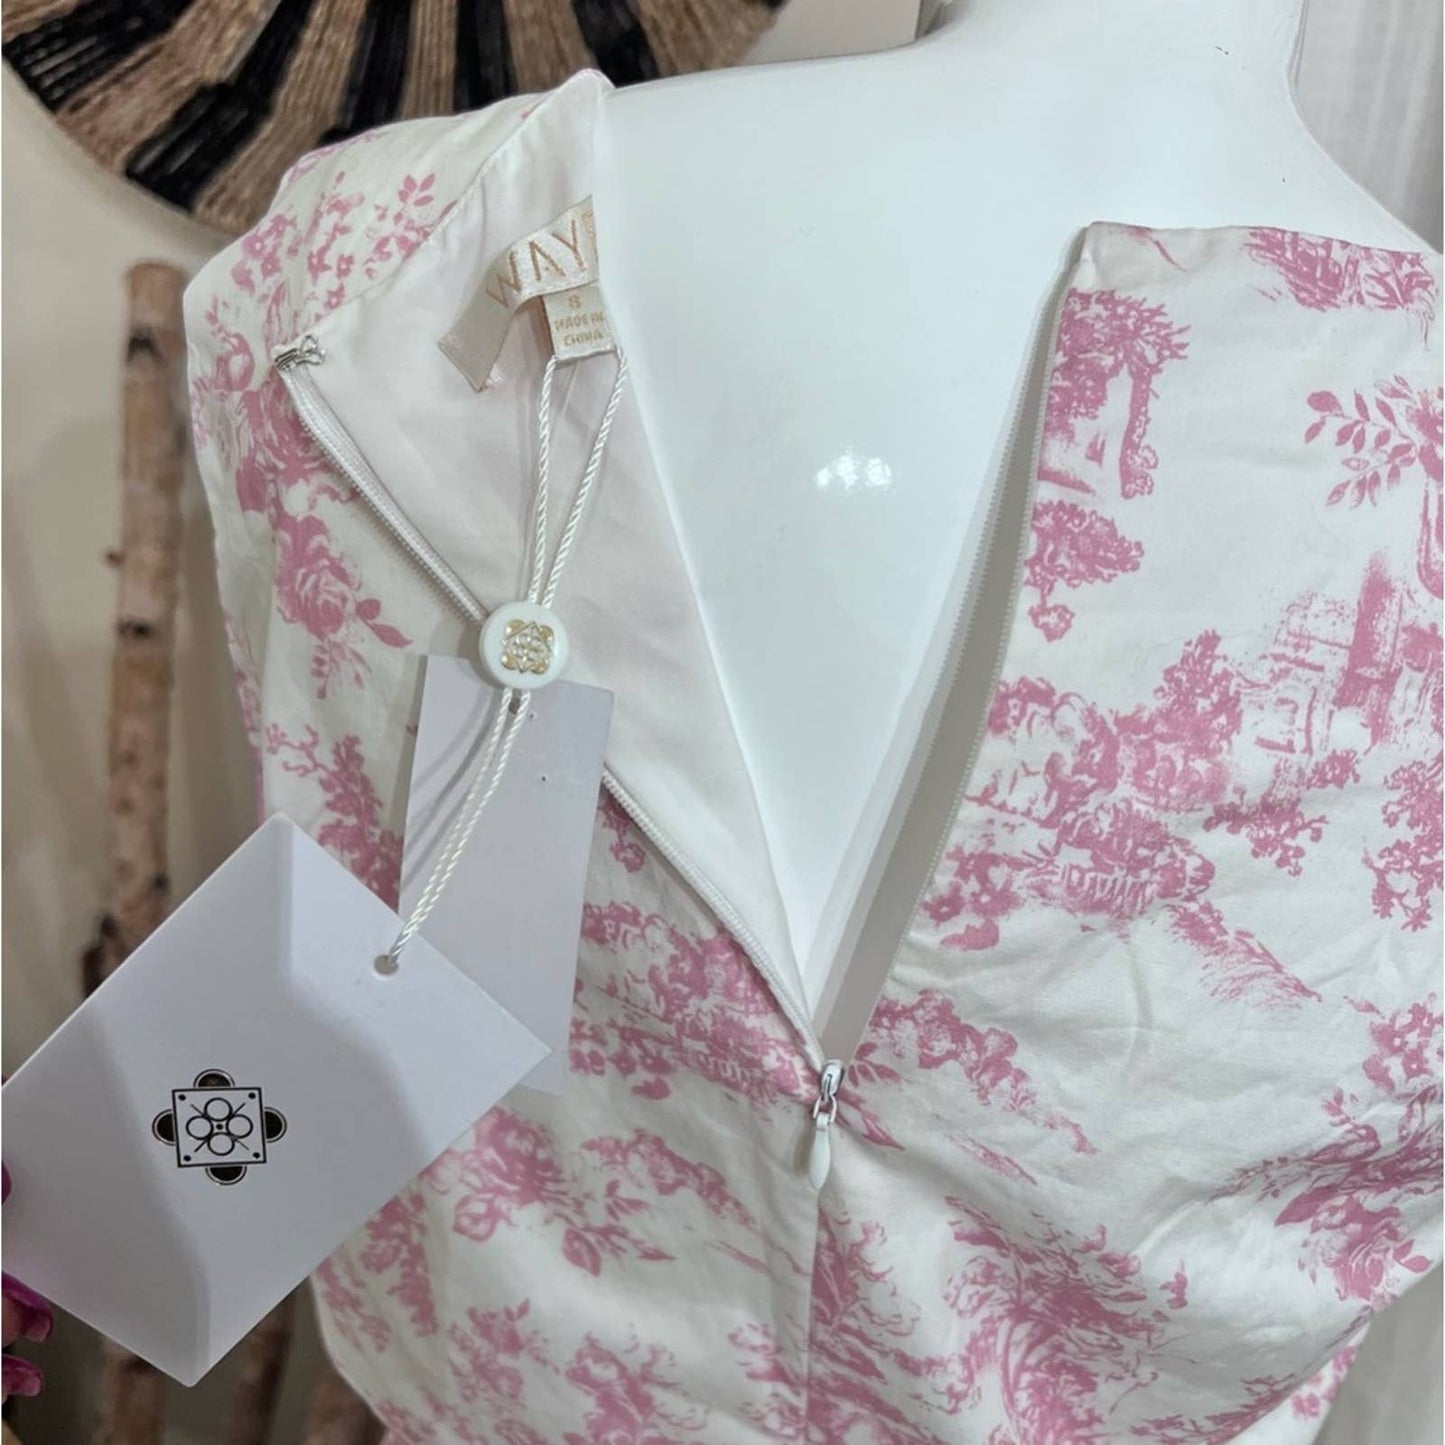 WAYF Pink & White Side Cutout Ruffled Hem Dress SM